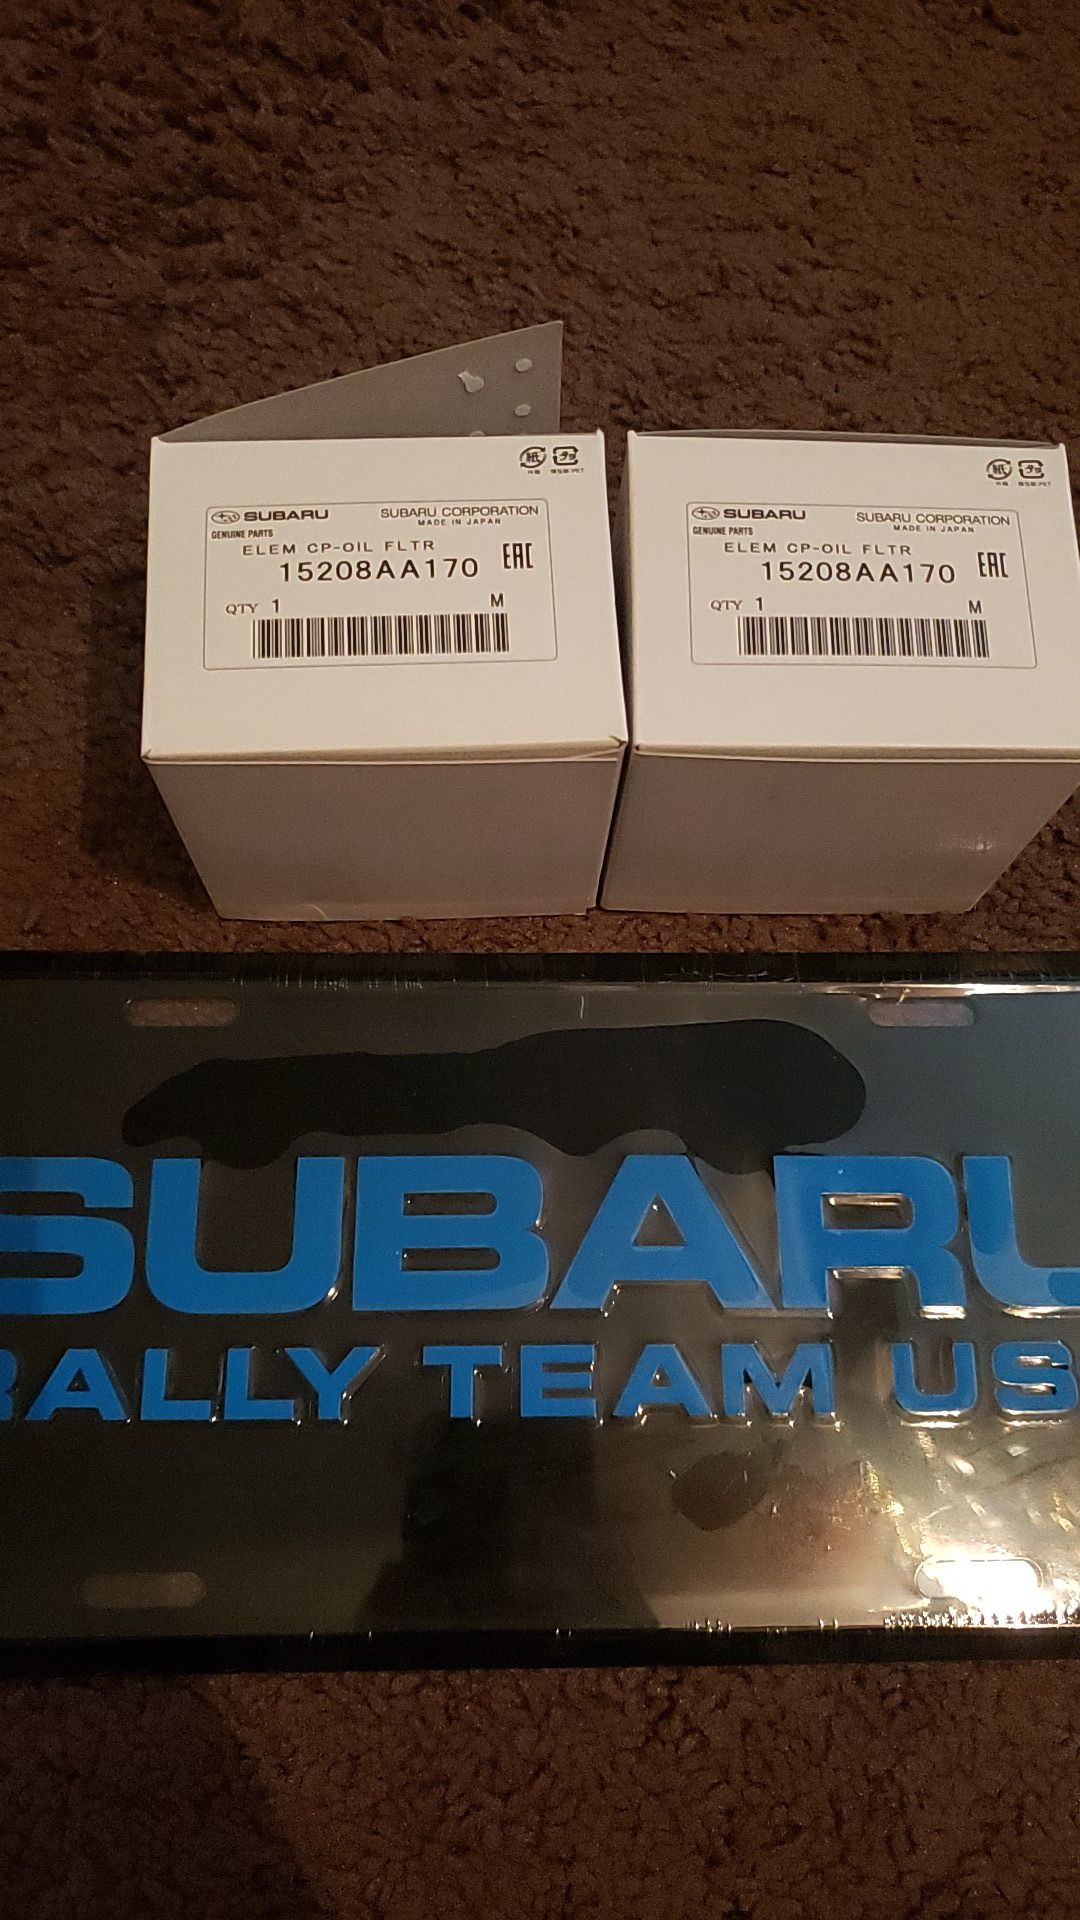 Subaru rally team vanity plate and 2 brand new Subaru oem oil filters part number 15208AA170